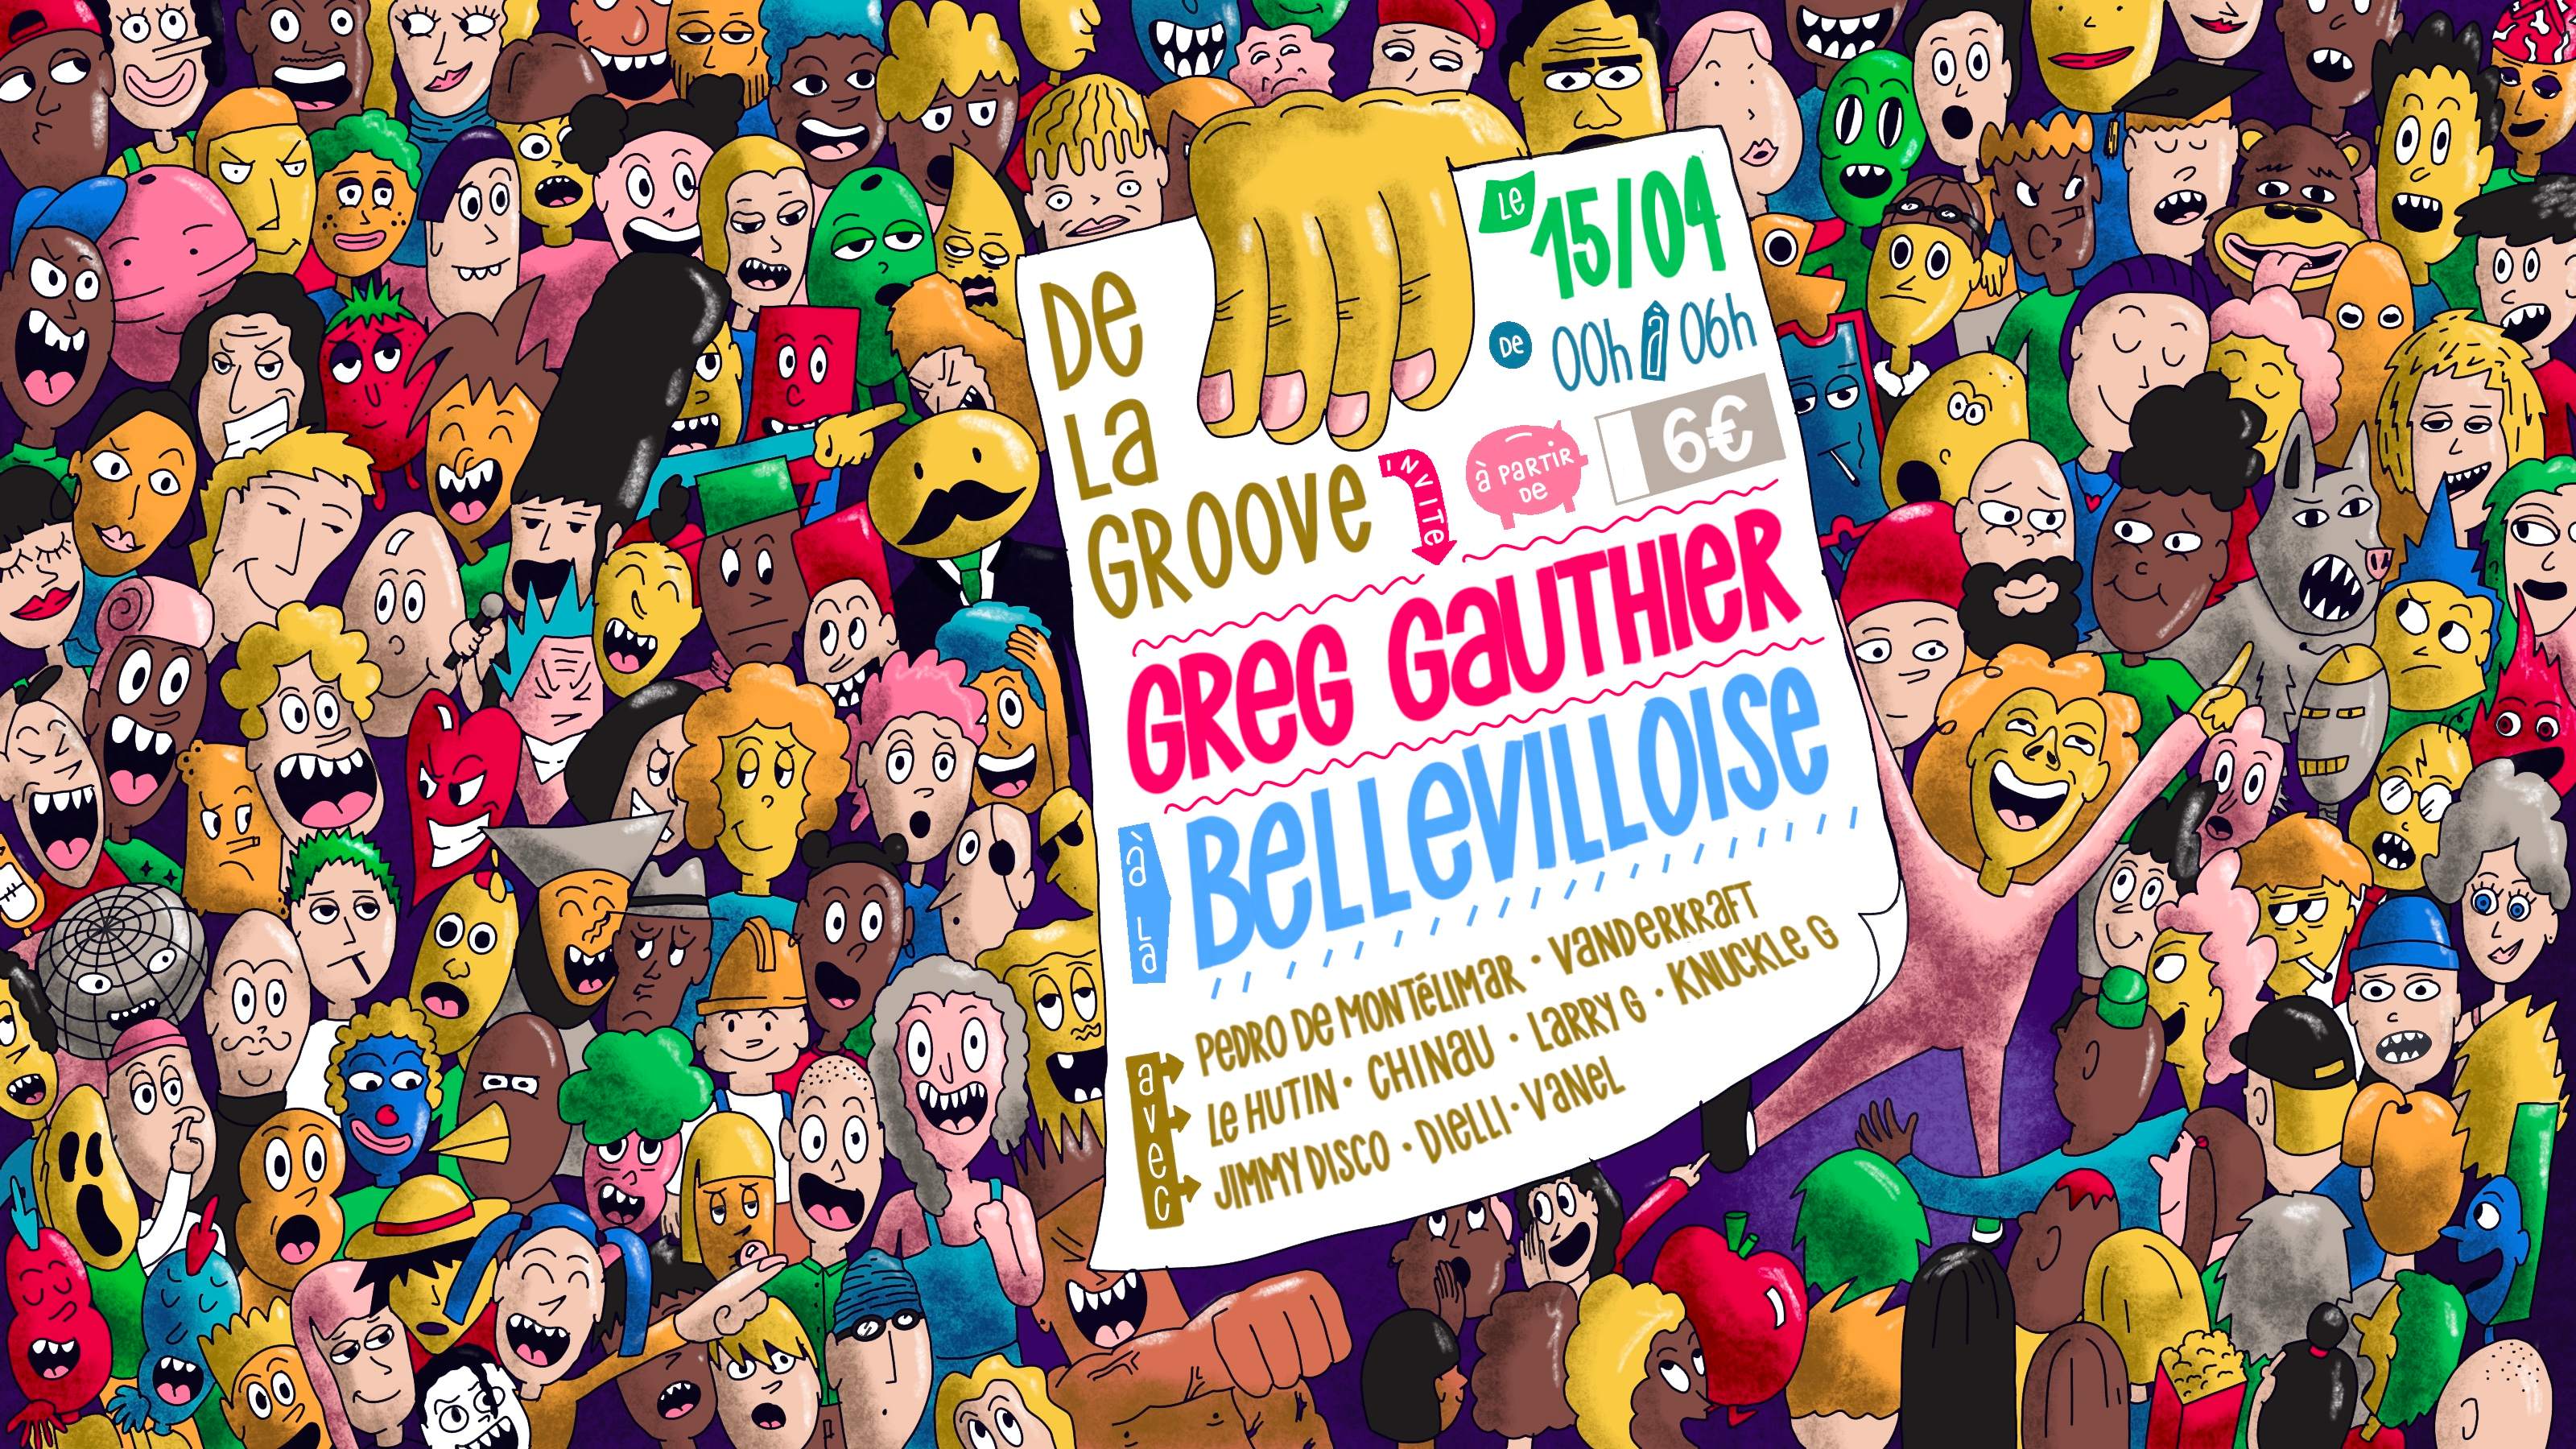 De La Groove invite Greg Gauthier | 15.04 - Página frontal